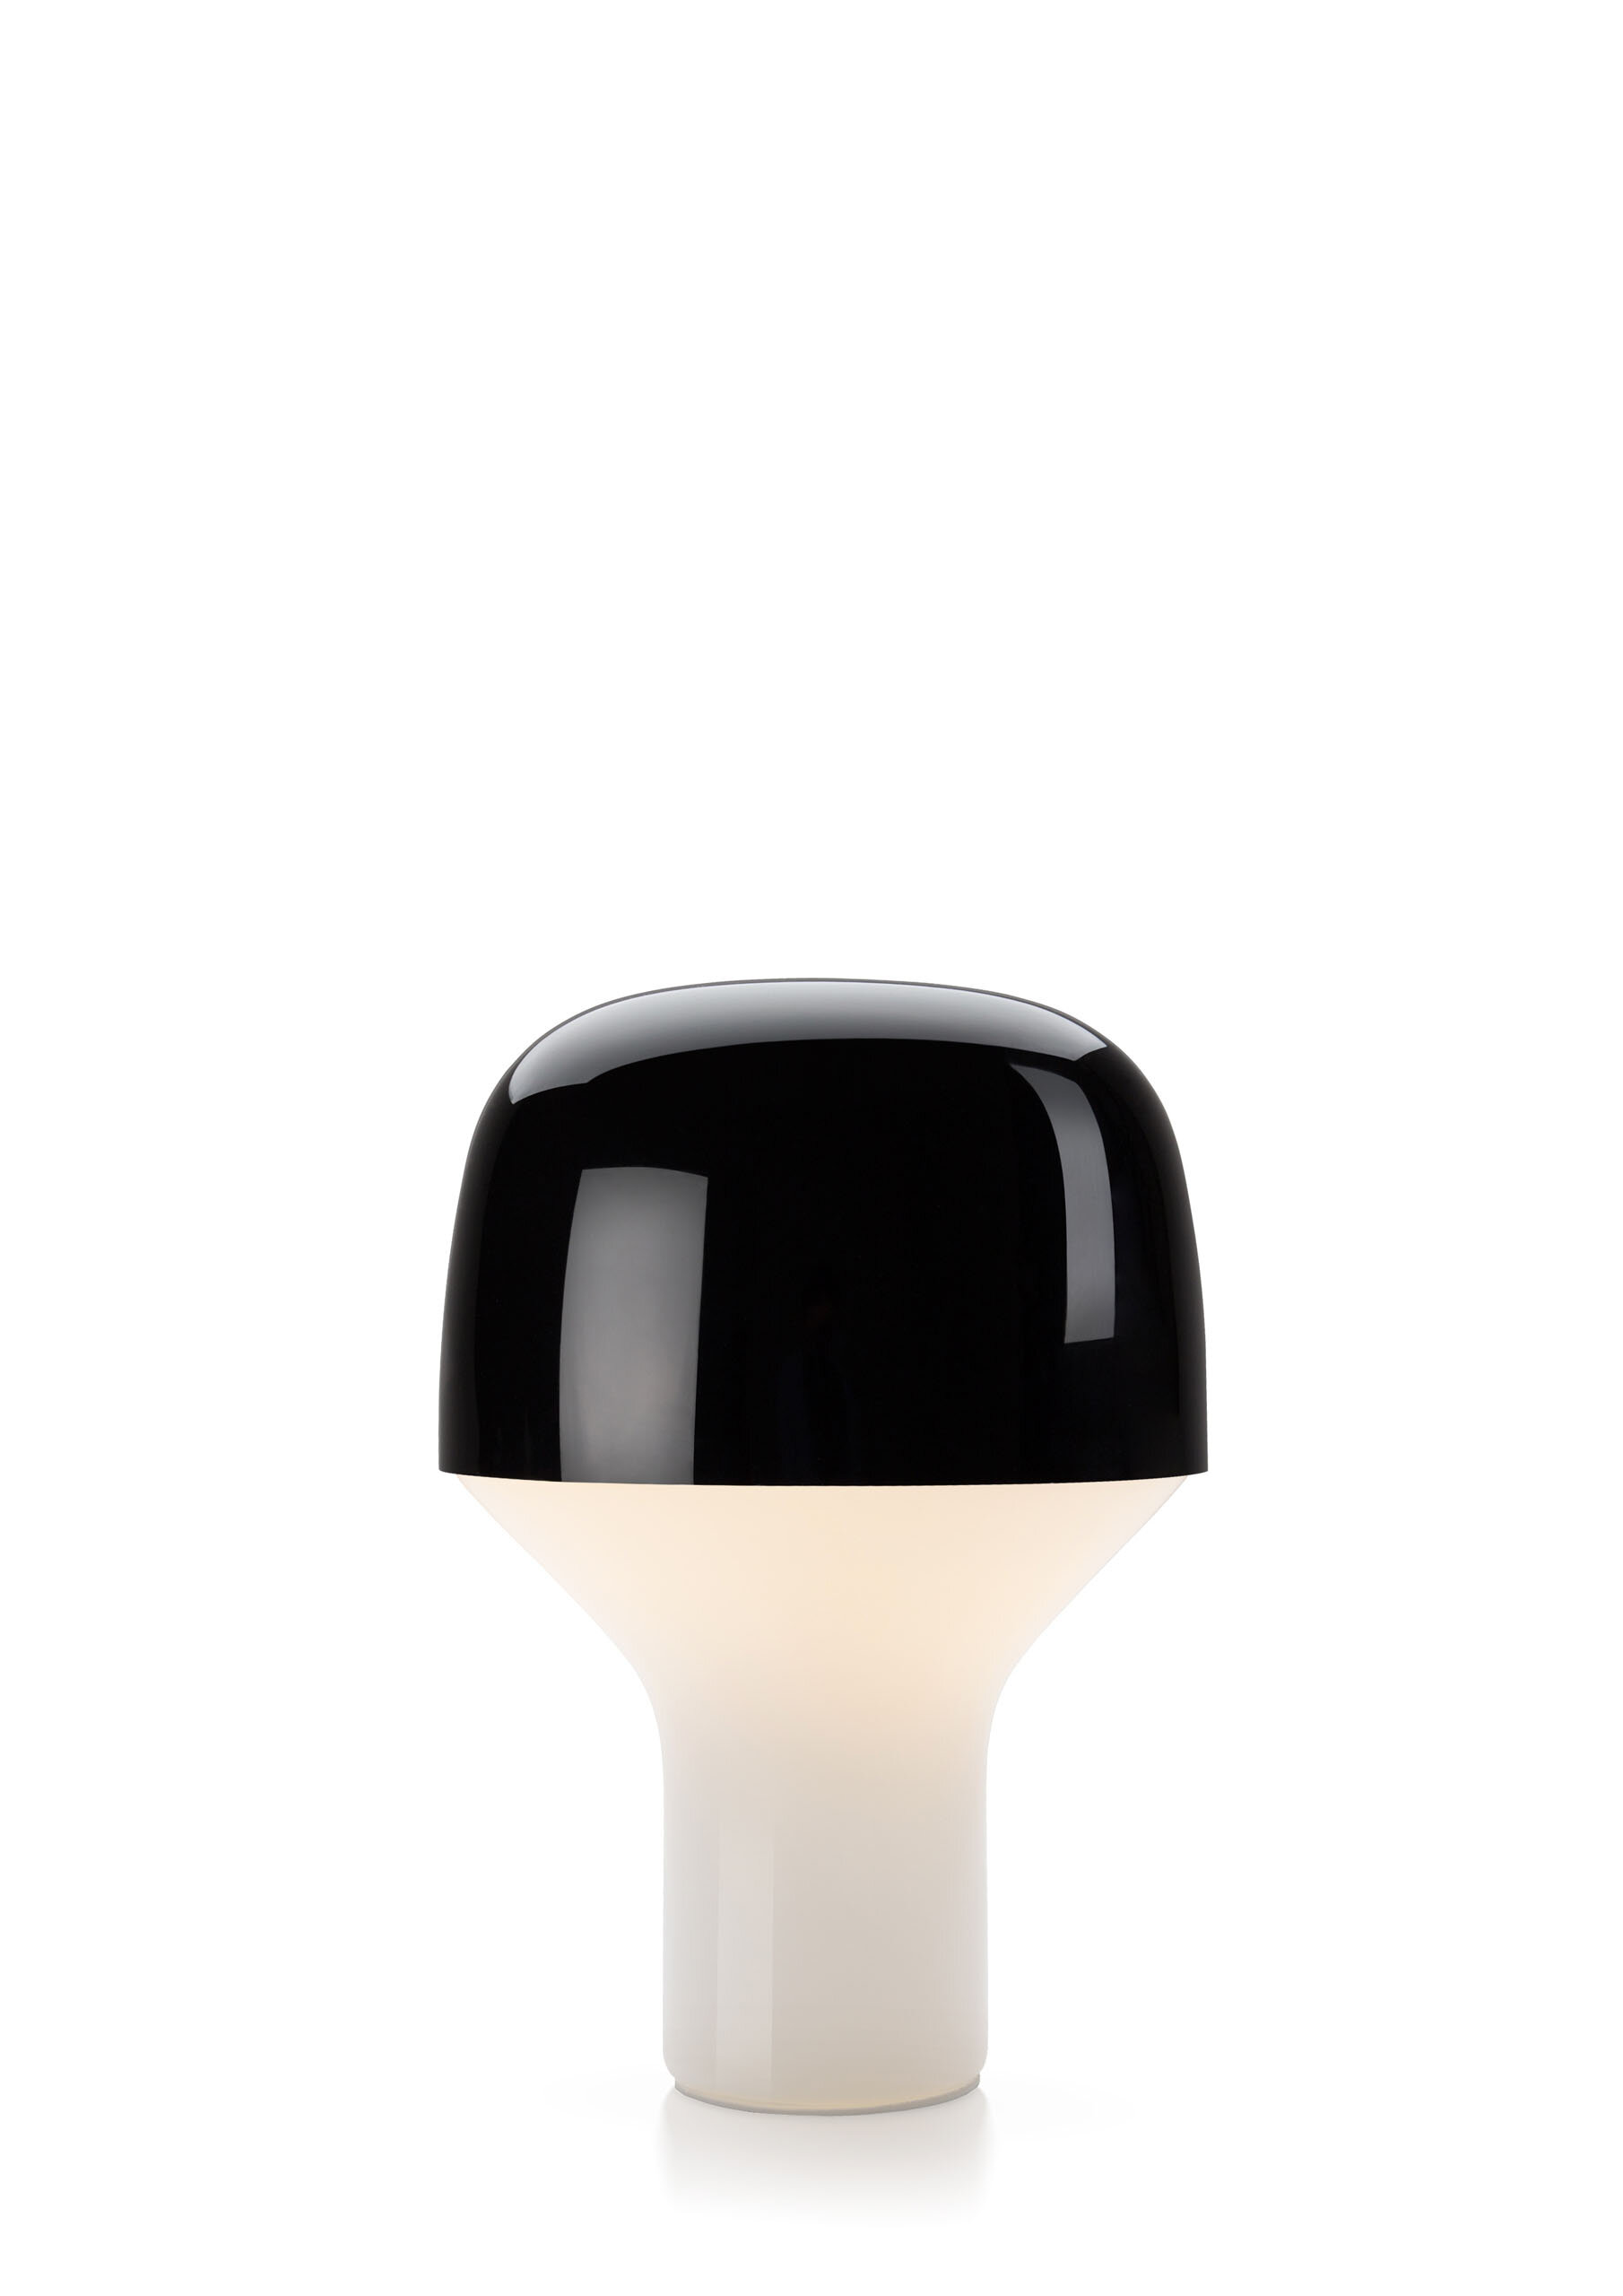 teo-cap-table-lamp-black-cutout.jpg